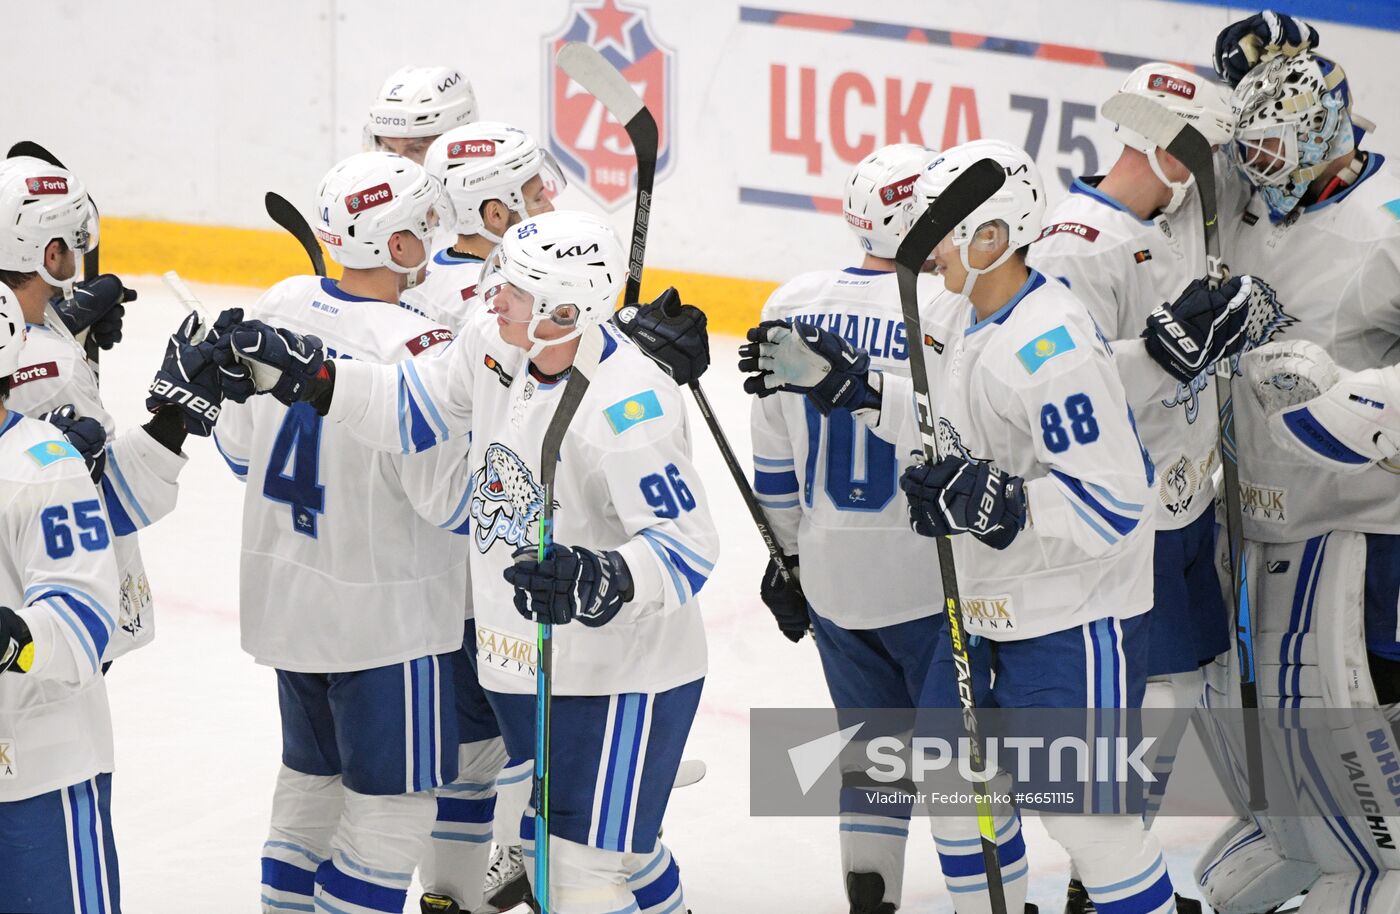 Russia Ice Hockey CSKA - Barys